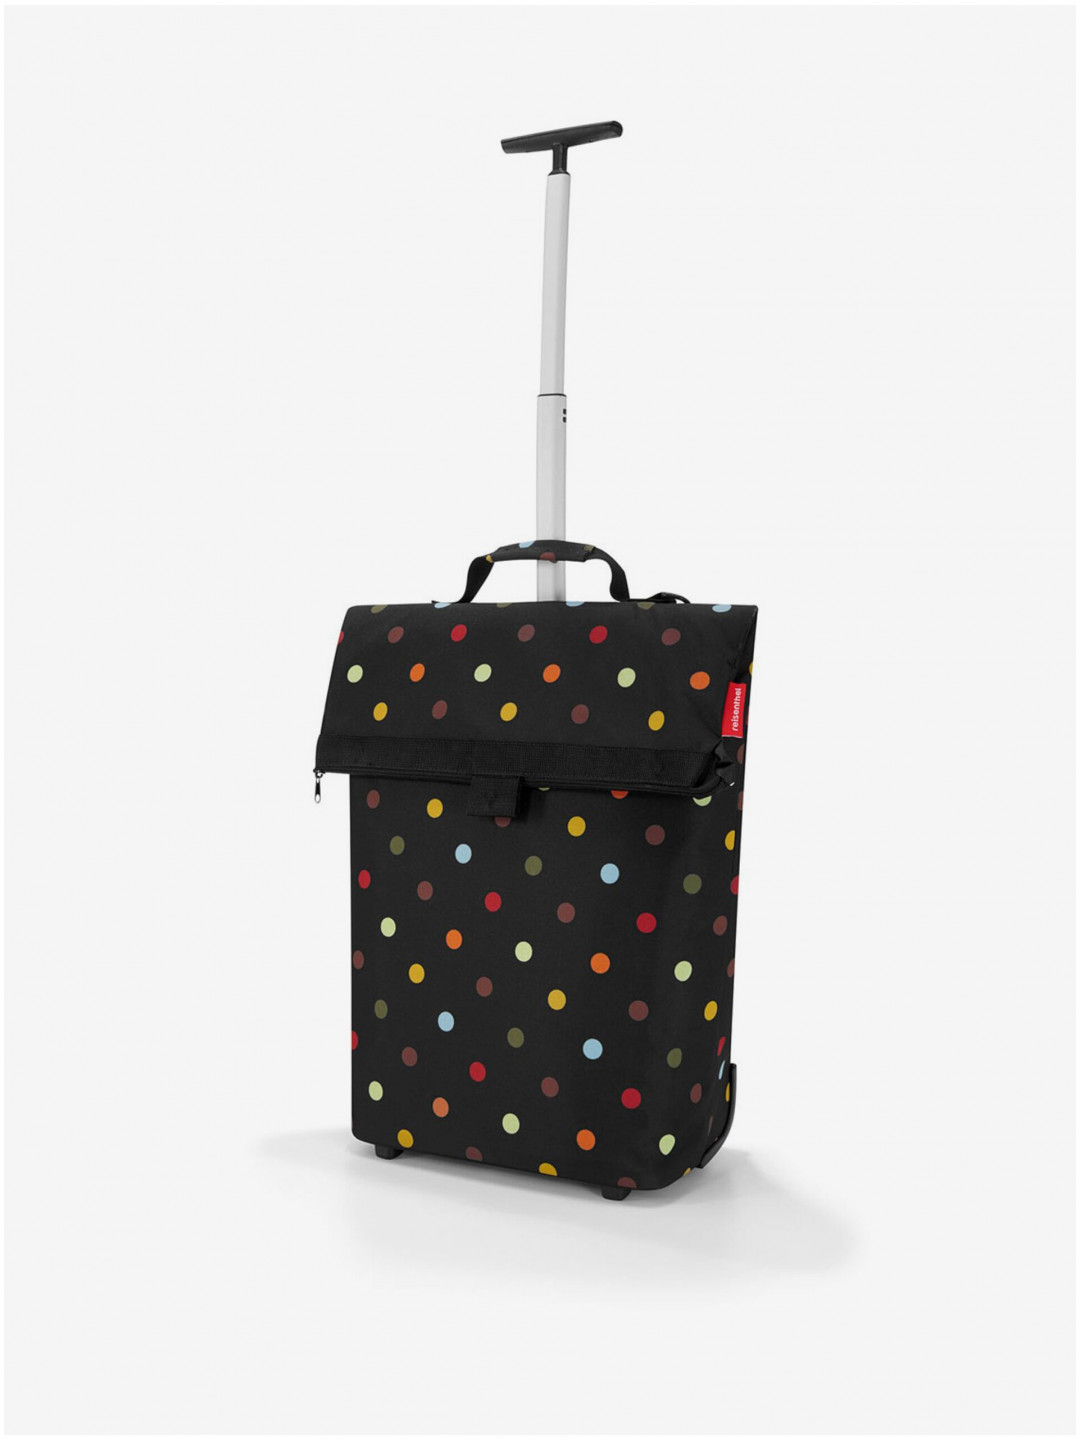 Černá dámská cestovní taška s puntíky Reisenthel Trolley M Dots